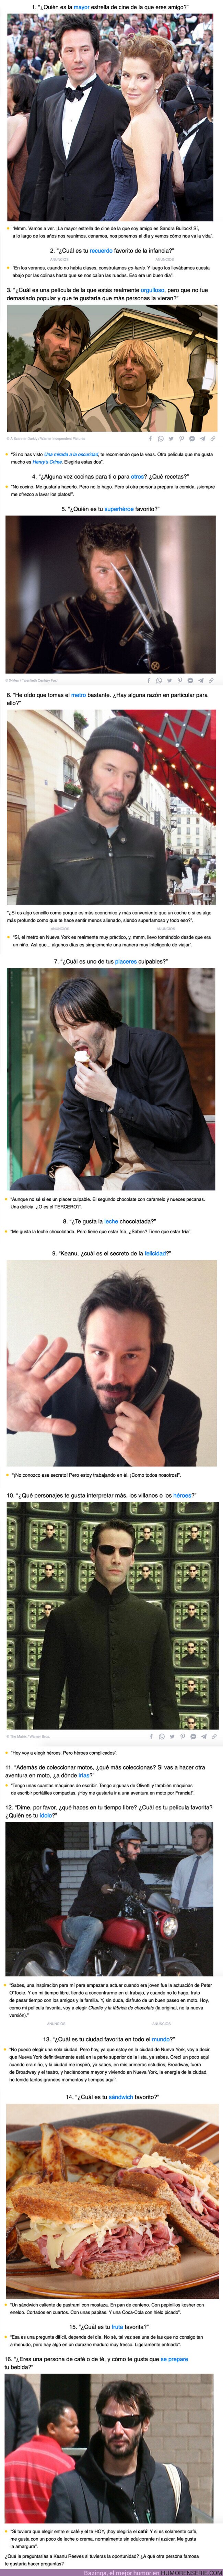 104261 - GALERÍA: Keanu Reeves se unió a Reddit para poder responder a las preguntas de sus fans, y ahora lo amamos aún más